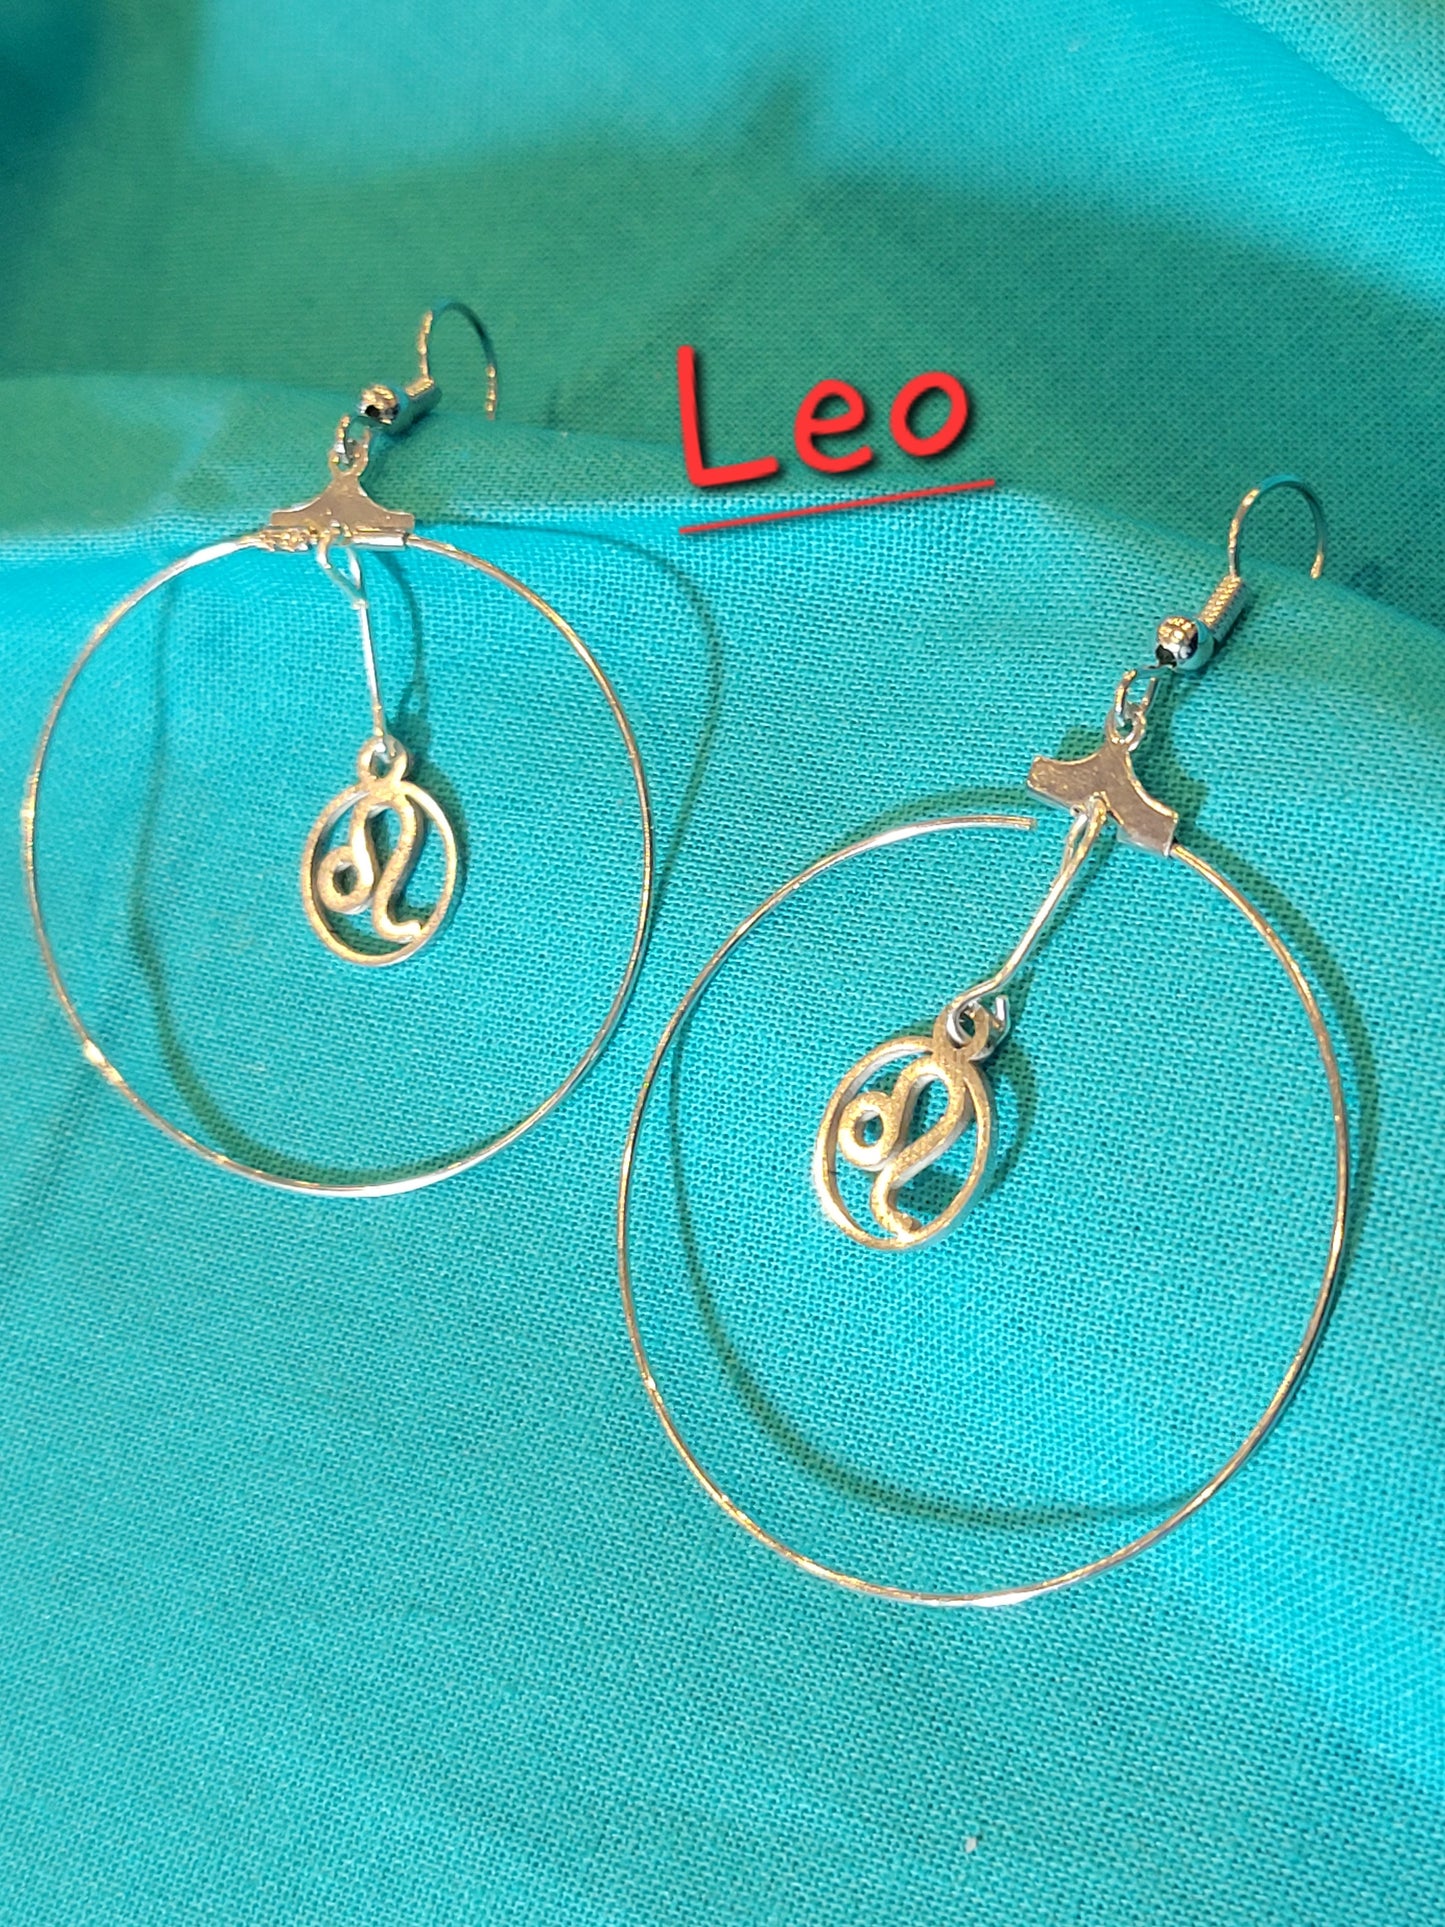 Zodiac Earrings